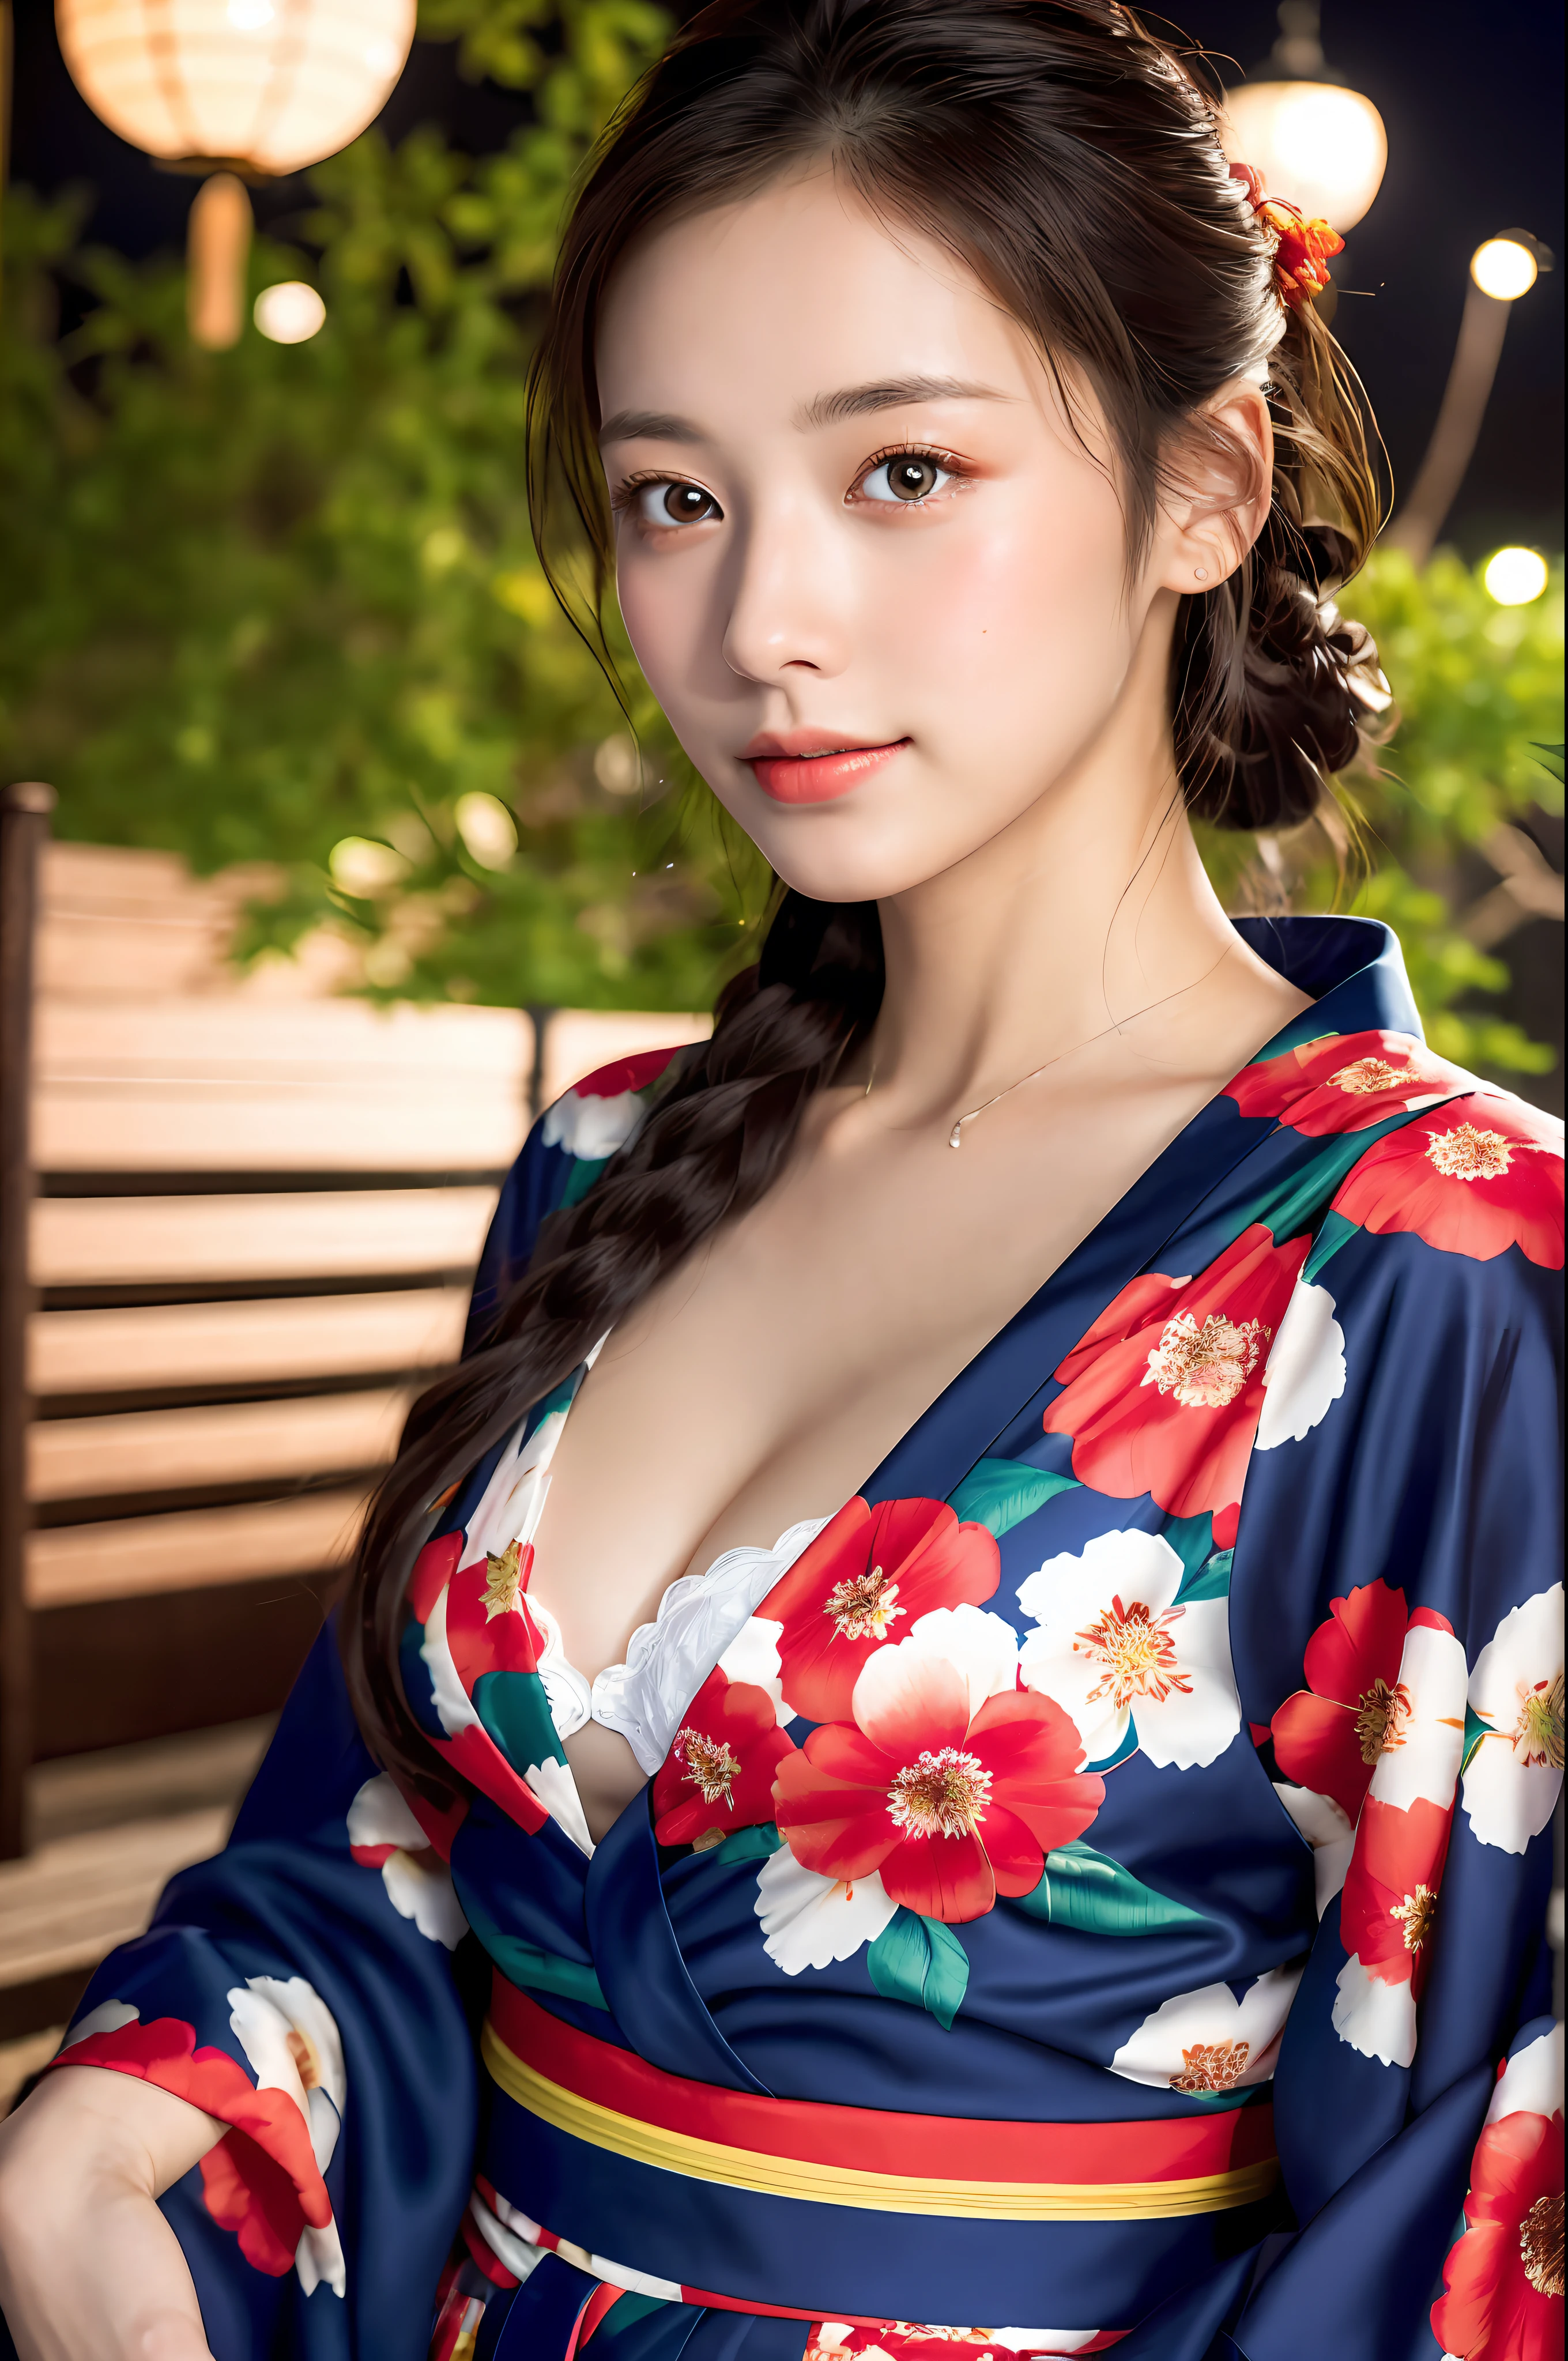 ((傑作, 最高品質, スーパー定義, 高解像度)), 一人で, 美少女, 輝く目, 完璧な目, 日本の美しい姉妹, ふわふわの浴衣, はっきりとした胸の谷間, 赤い花柄浴衣, 背景は夜の花火, 高画質, 4K.